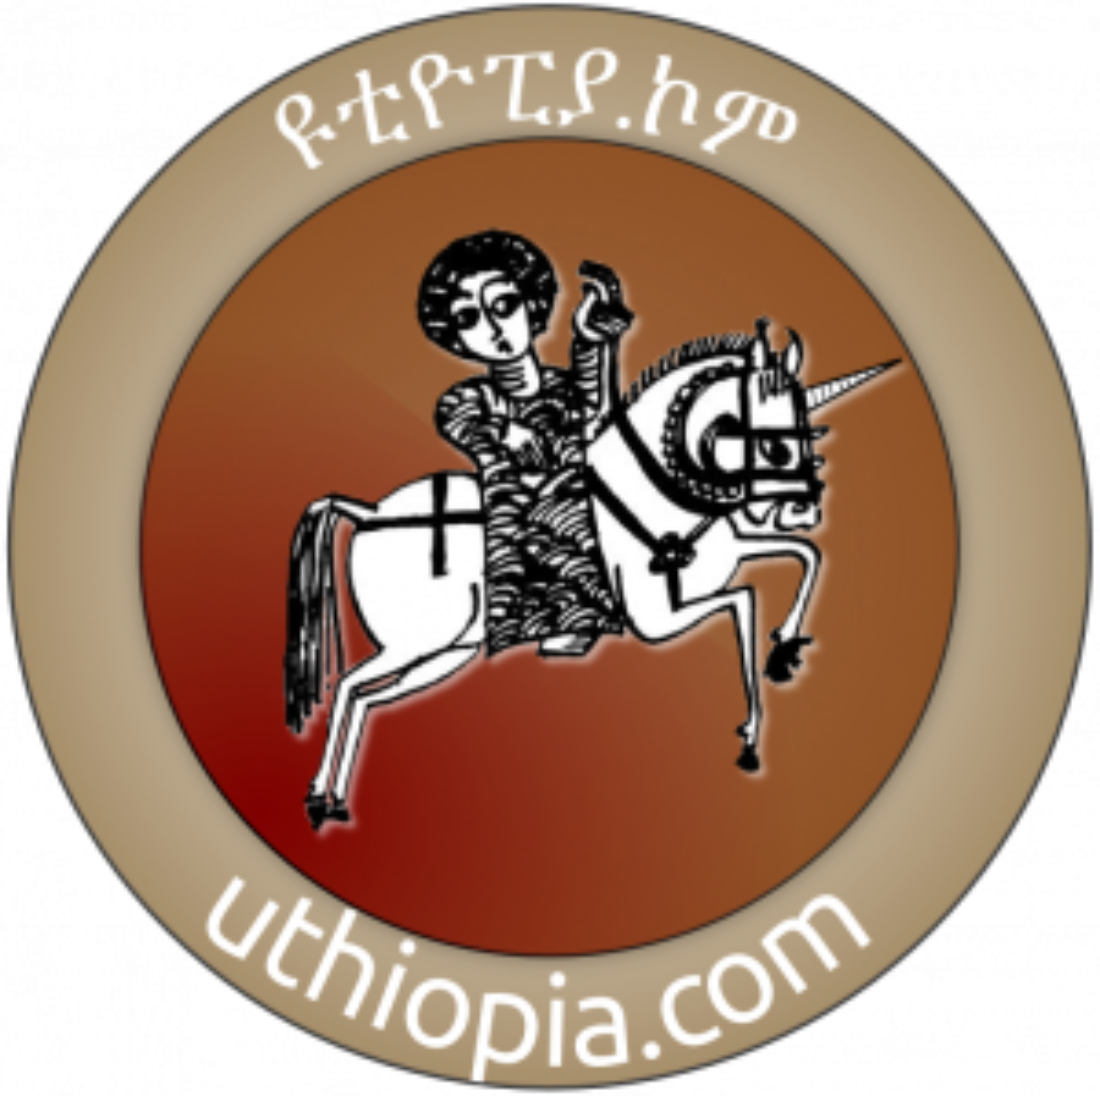 Uthiopia ዩ Uthiopia Ethiopia In Utopia - 